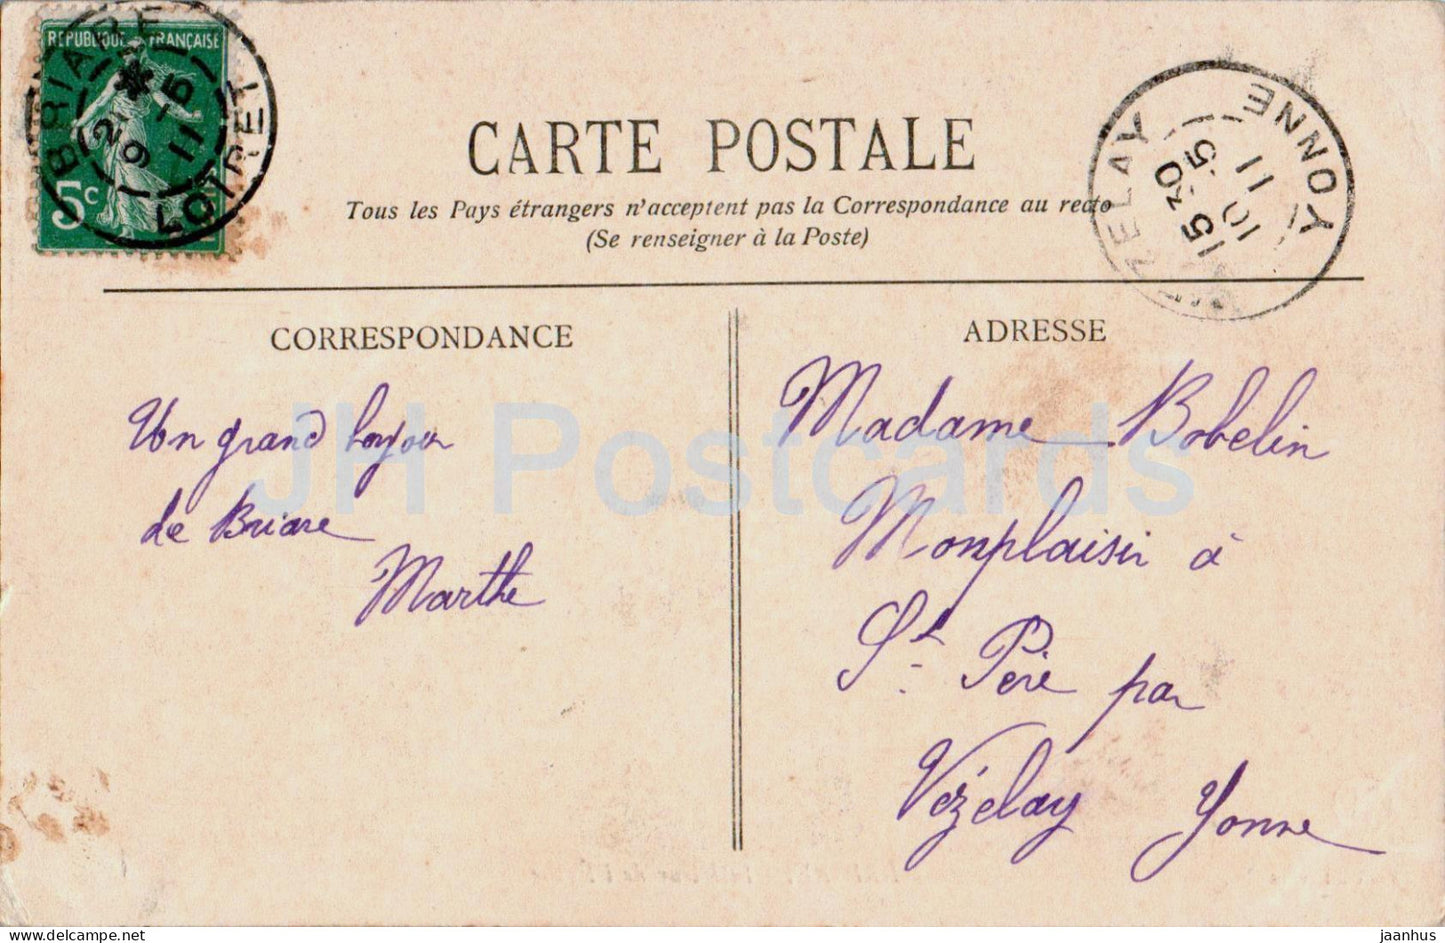 Briare - Interieur de l'Eglise - église - carte postale ancienne - 1911 - France - utilisé 